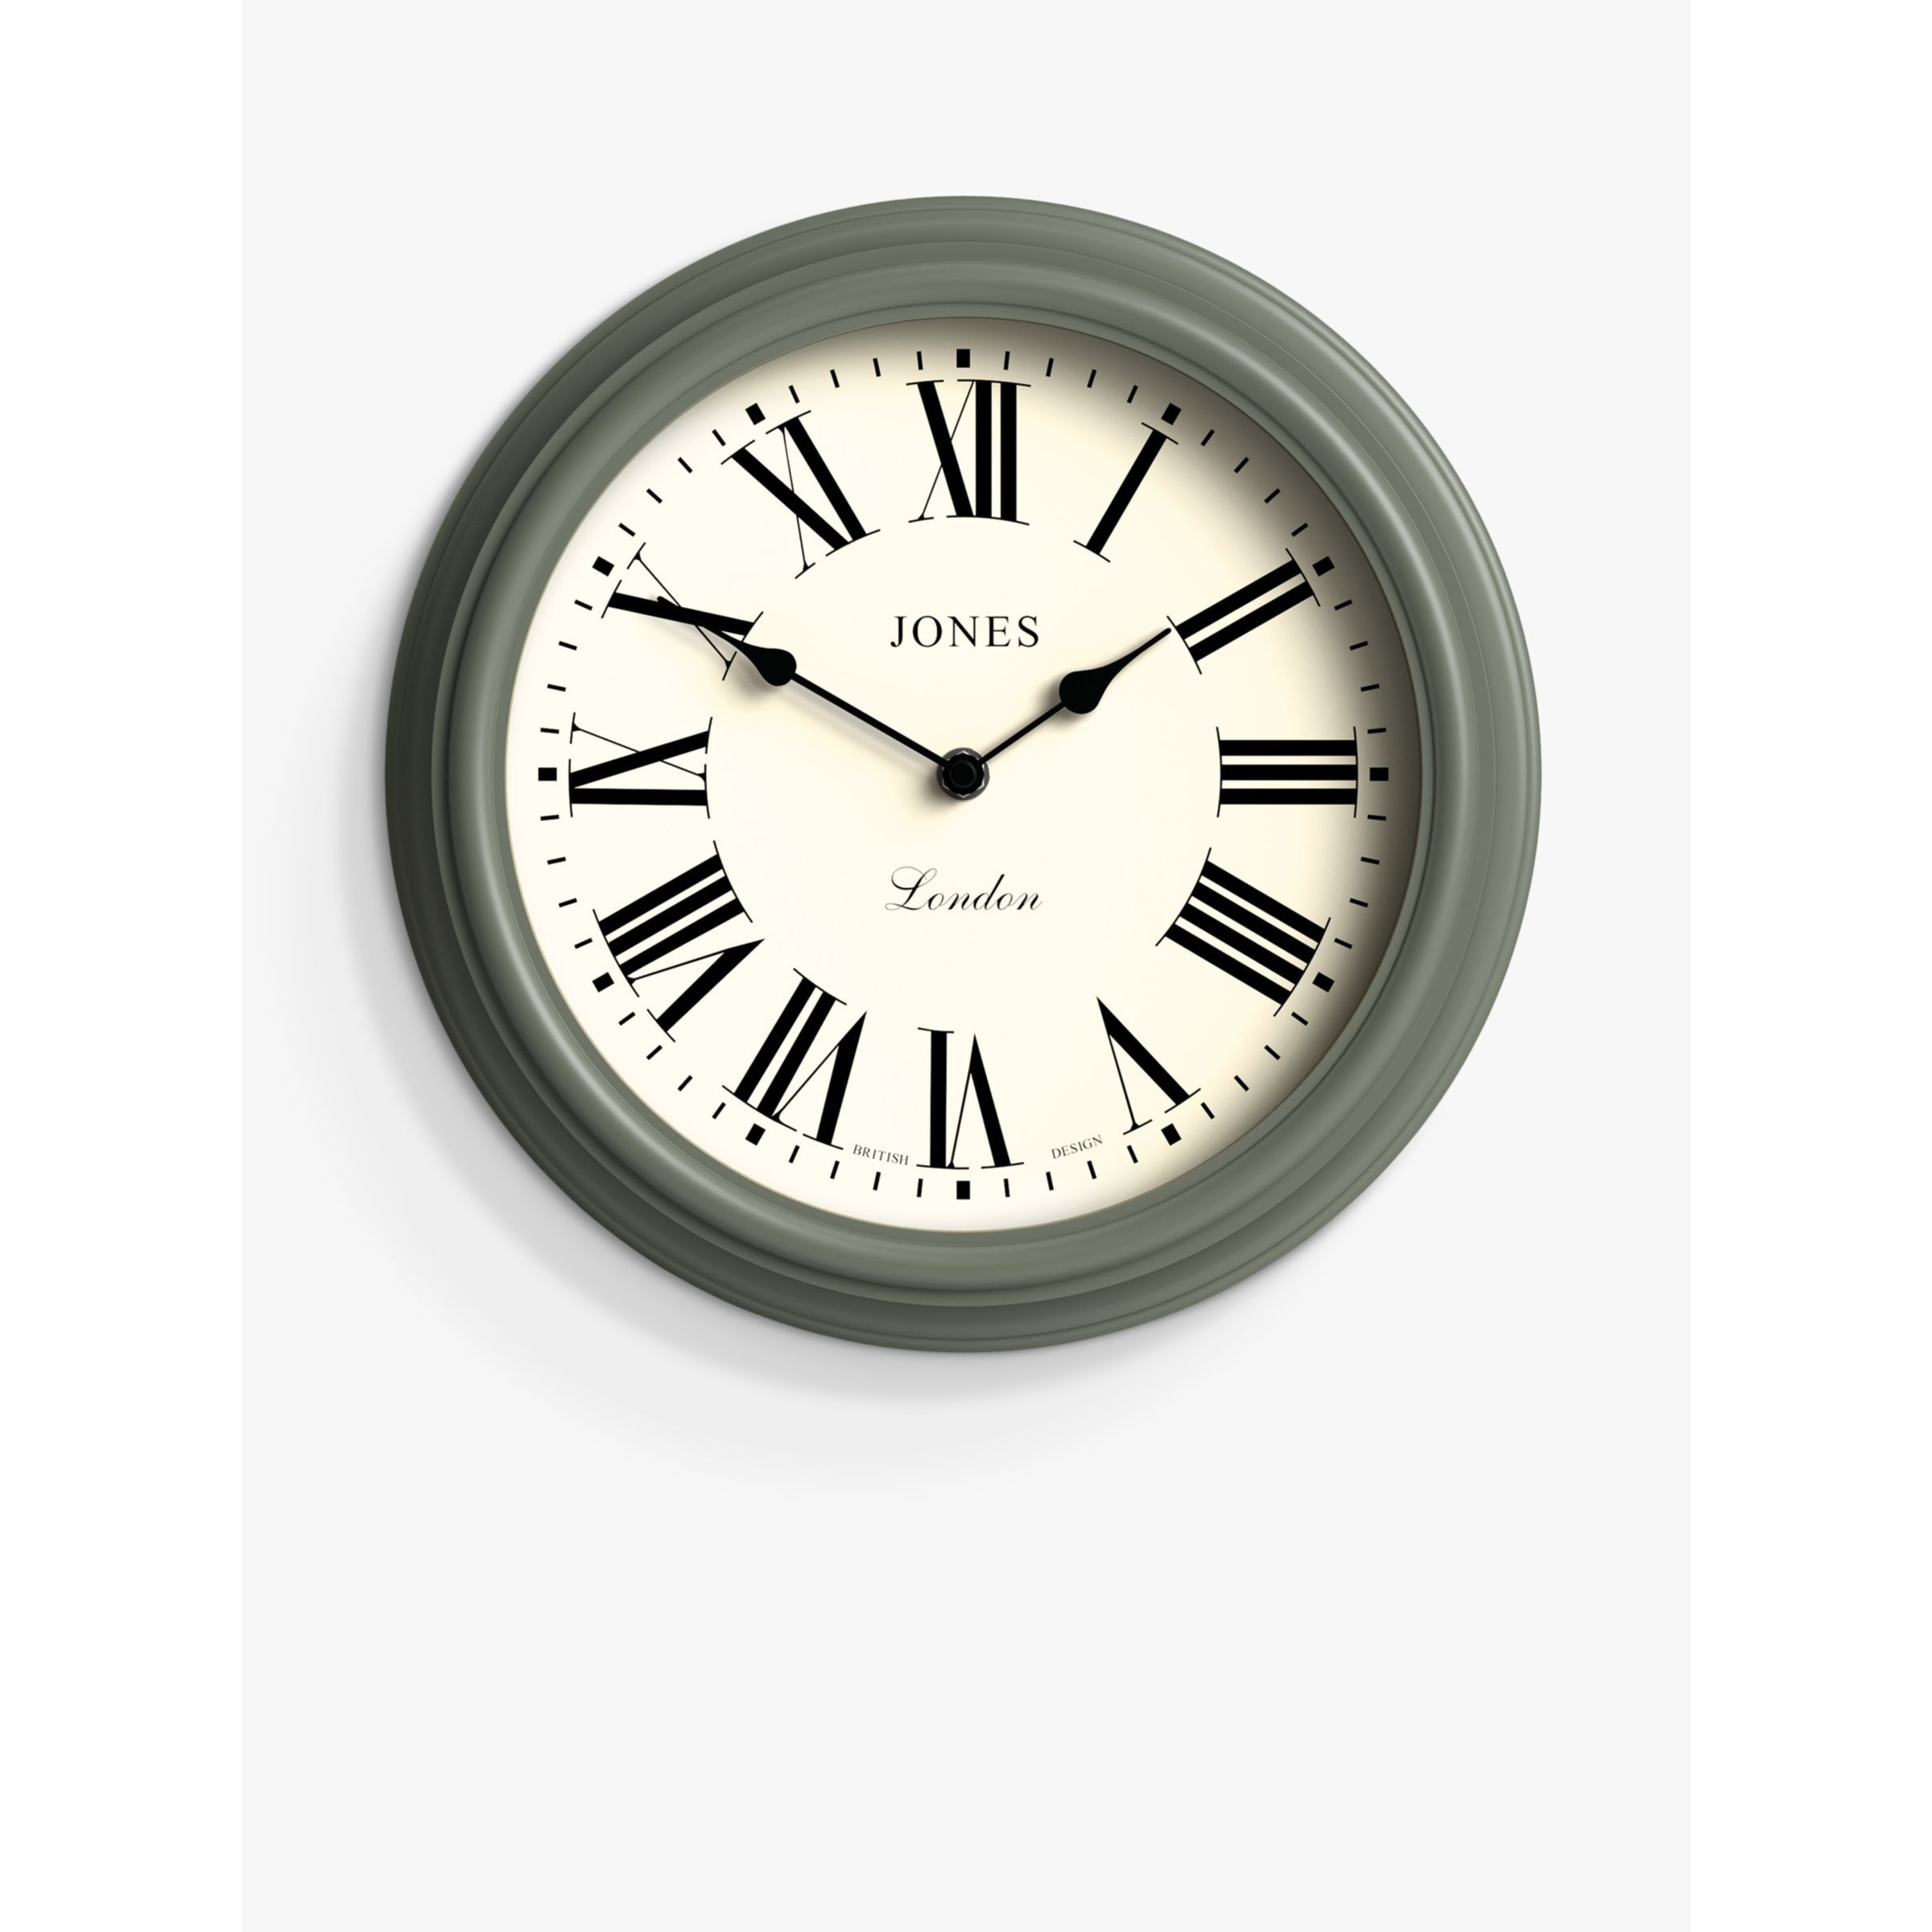 Jones Clocks Venetian Roman Numeral Analogue Wall Clock, 30.5cm - image 1